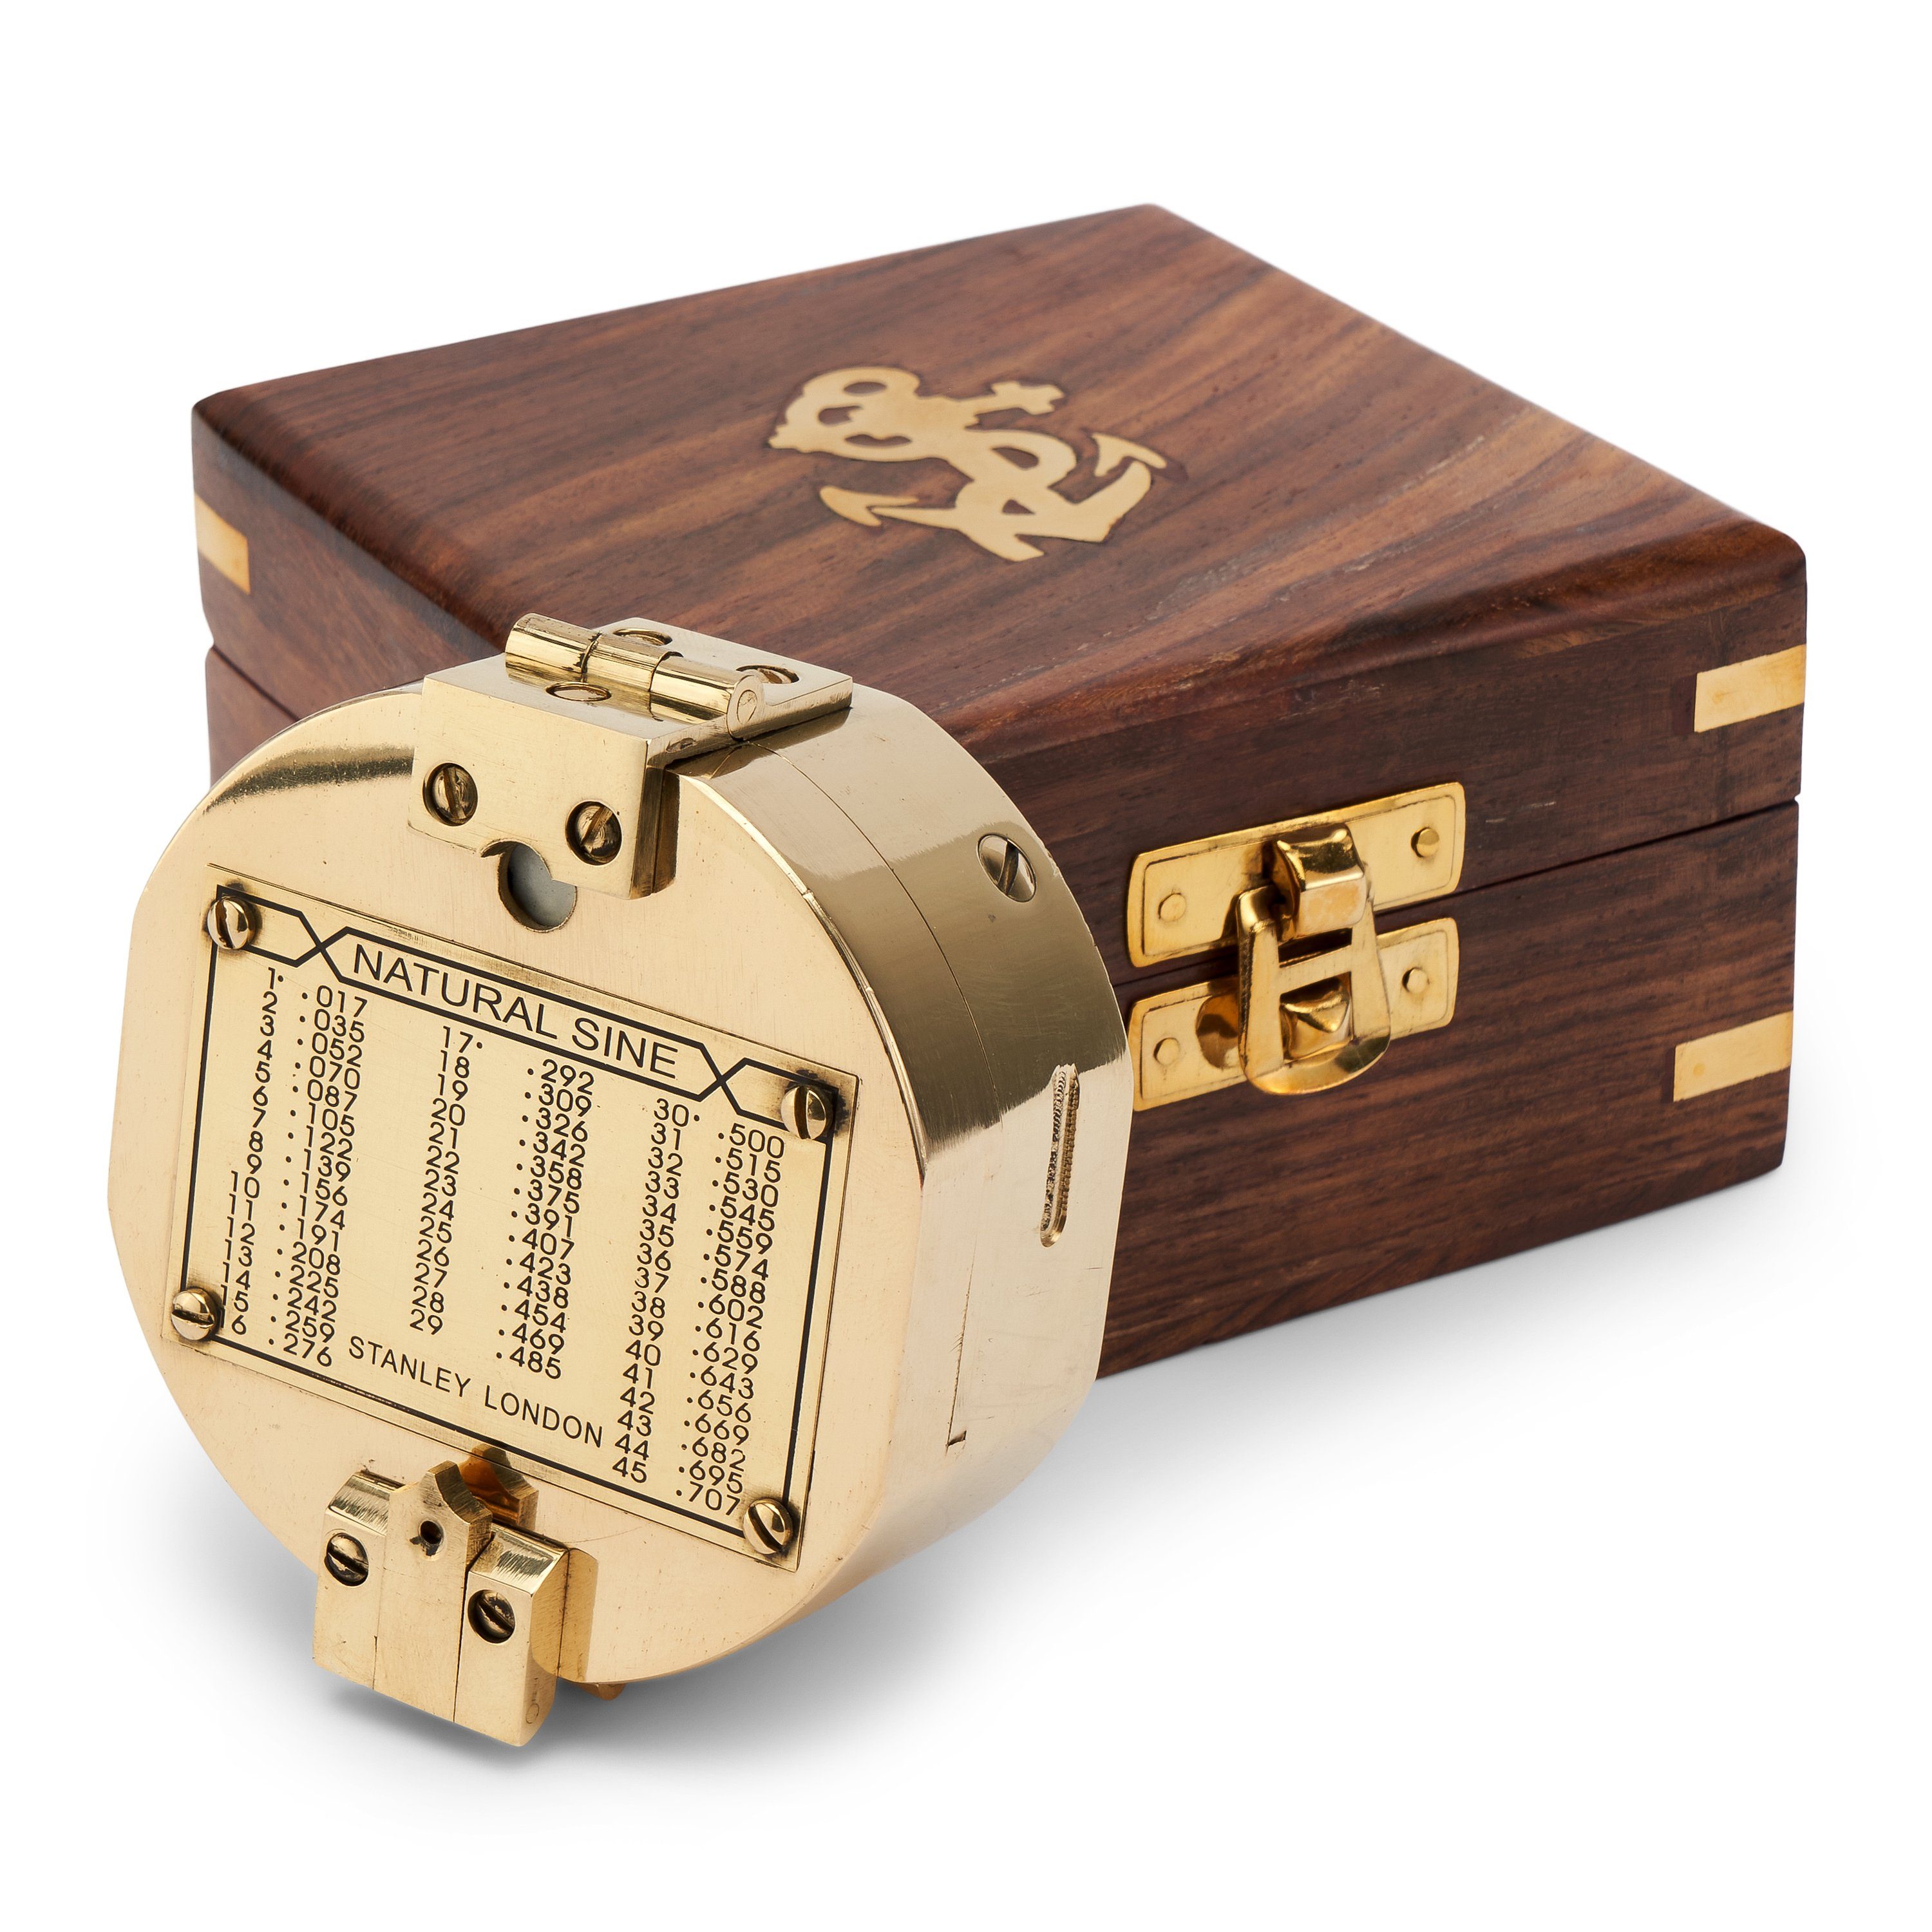 NKlaus 7cm Holzbox Taschenkompass Ori Brunton-Kompass maritimes Peilkompass aus Navigationsgerät Messing (Messing)